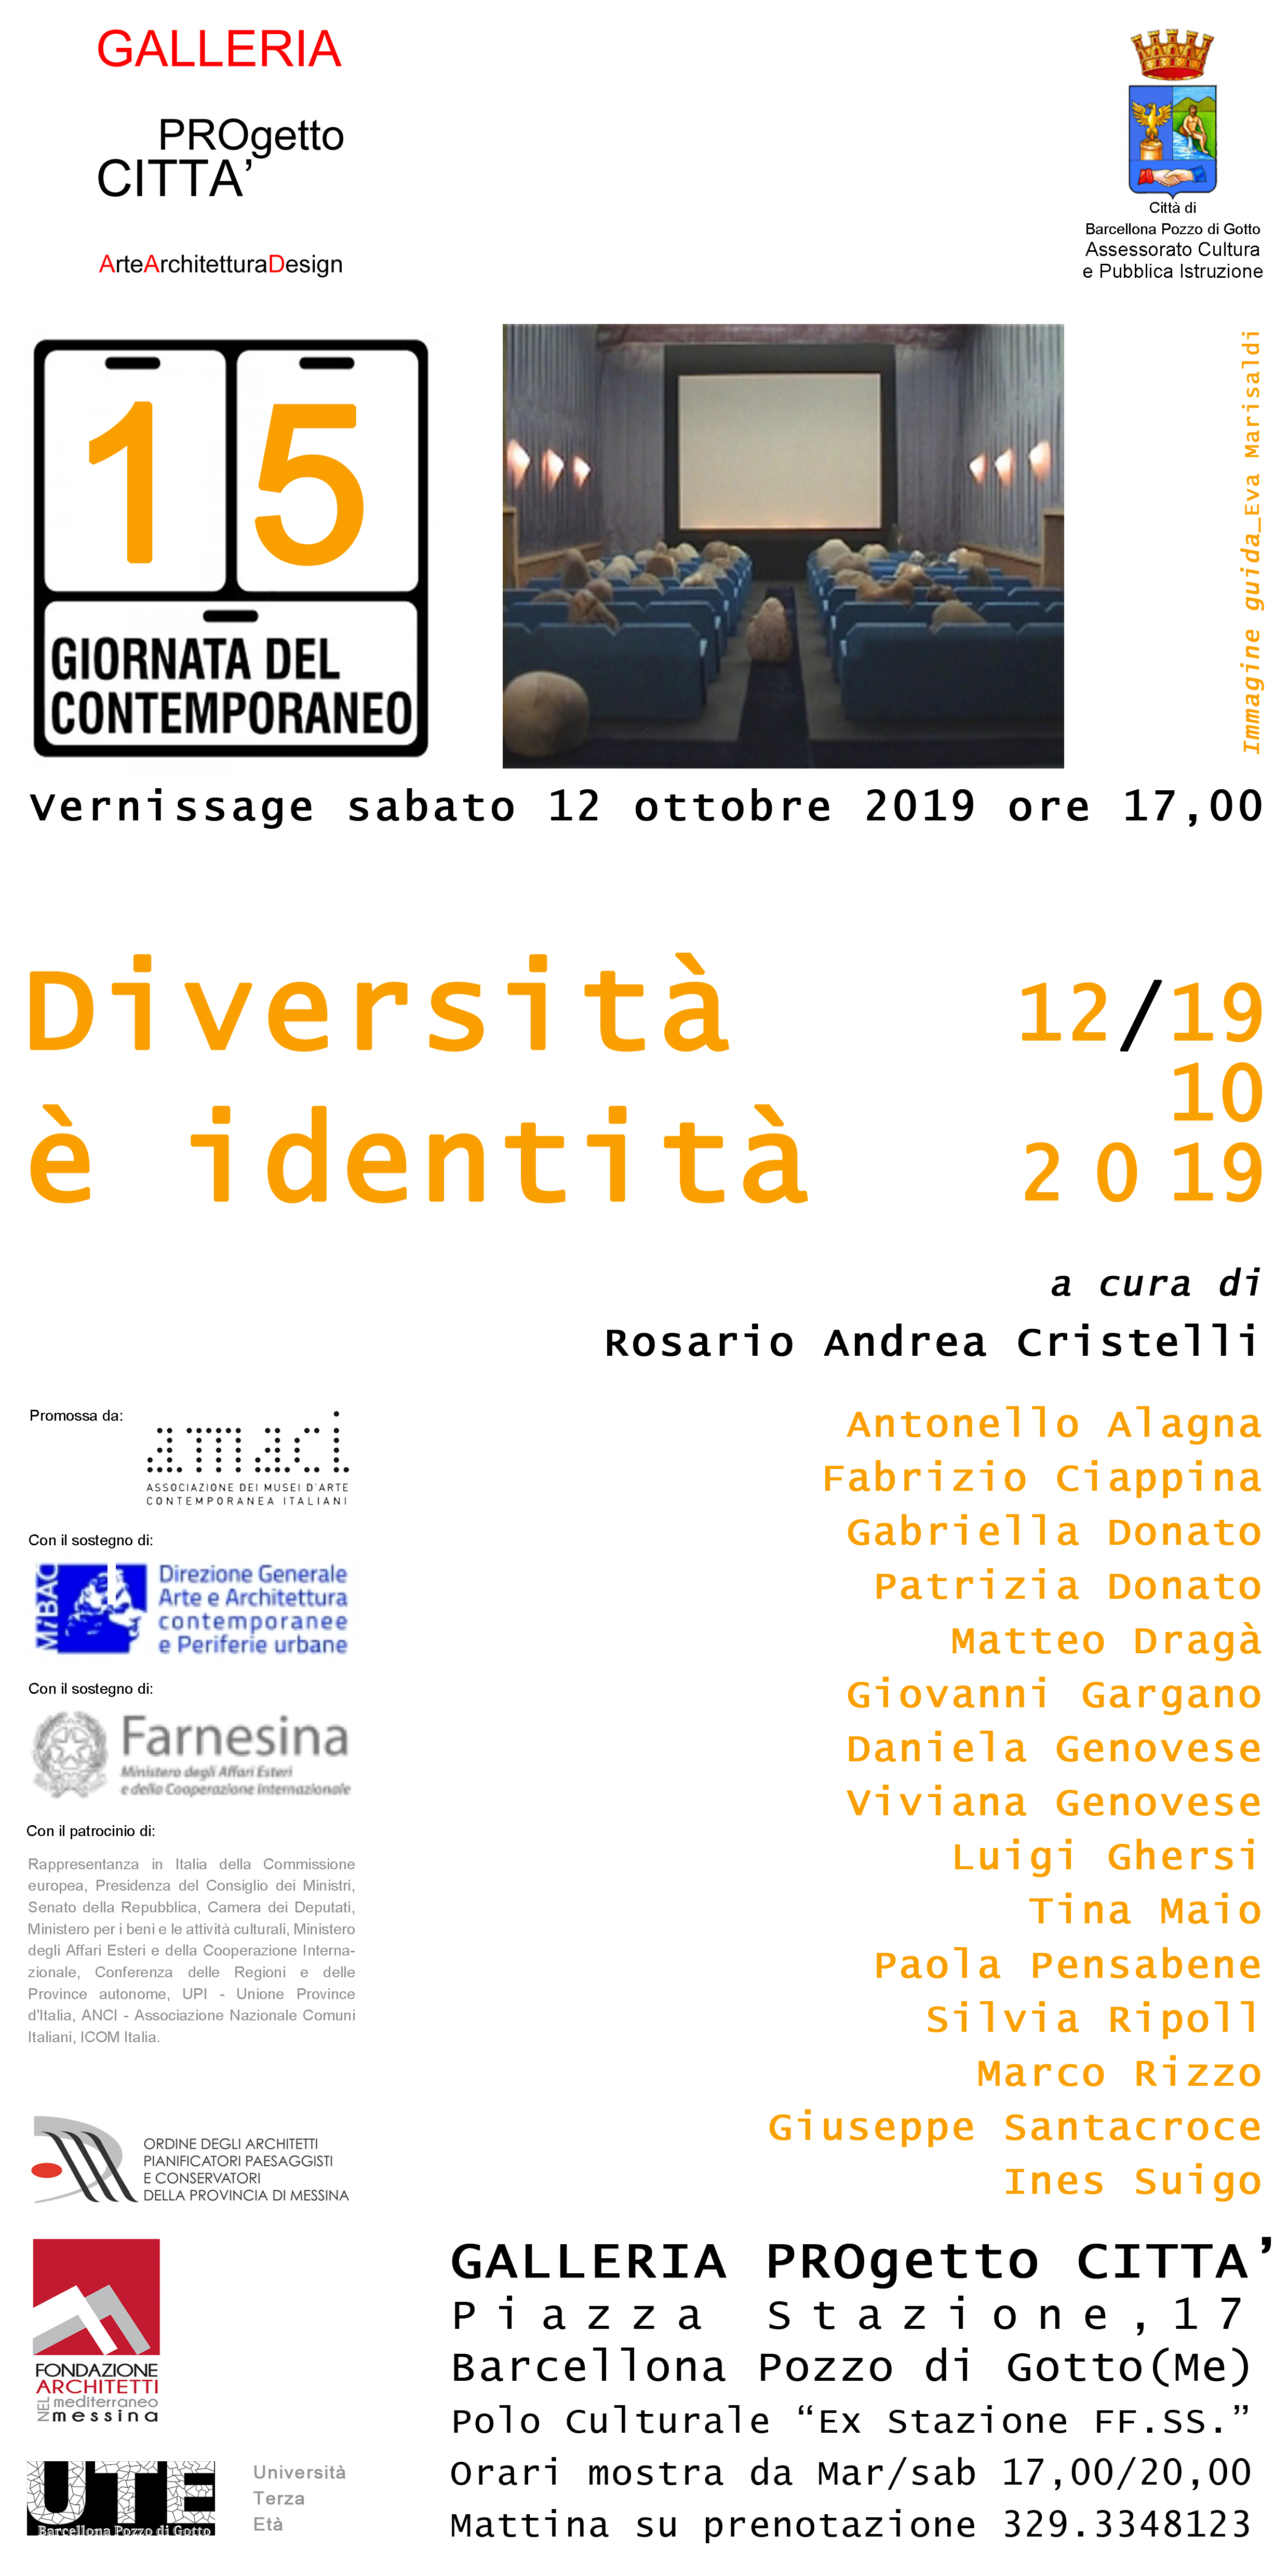 Barcellona PG. Alla GALLERIA PROgetto CITTÀ la Mostra “Diversità è Identità” nella Giornata del Contemporaneo 